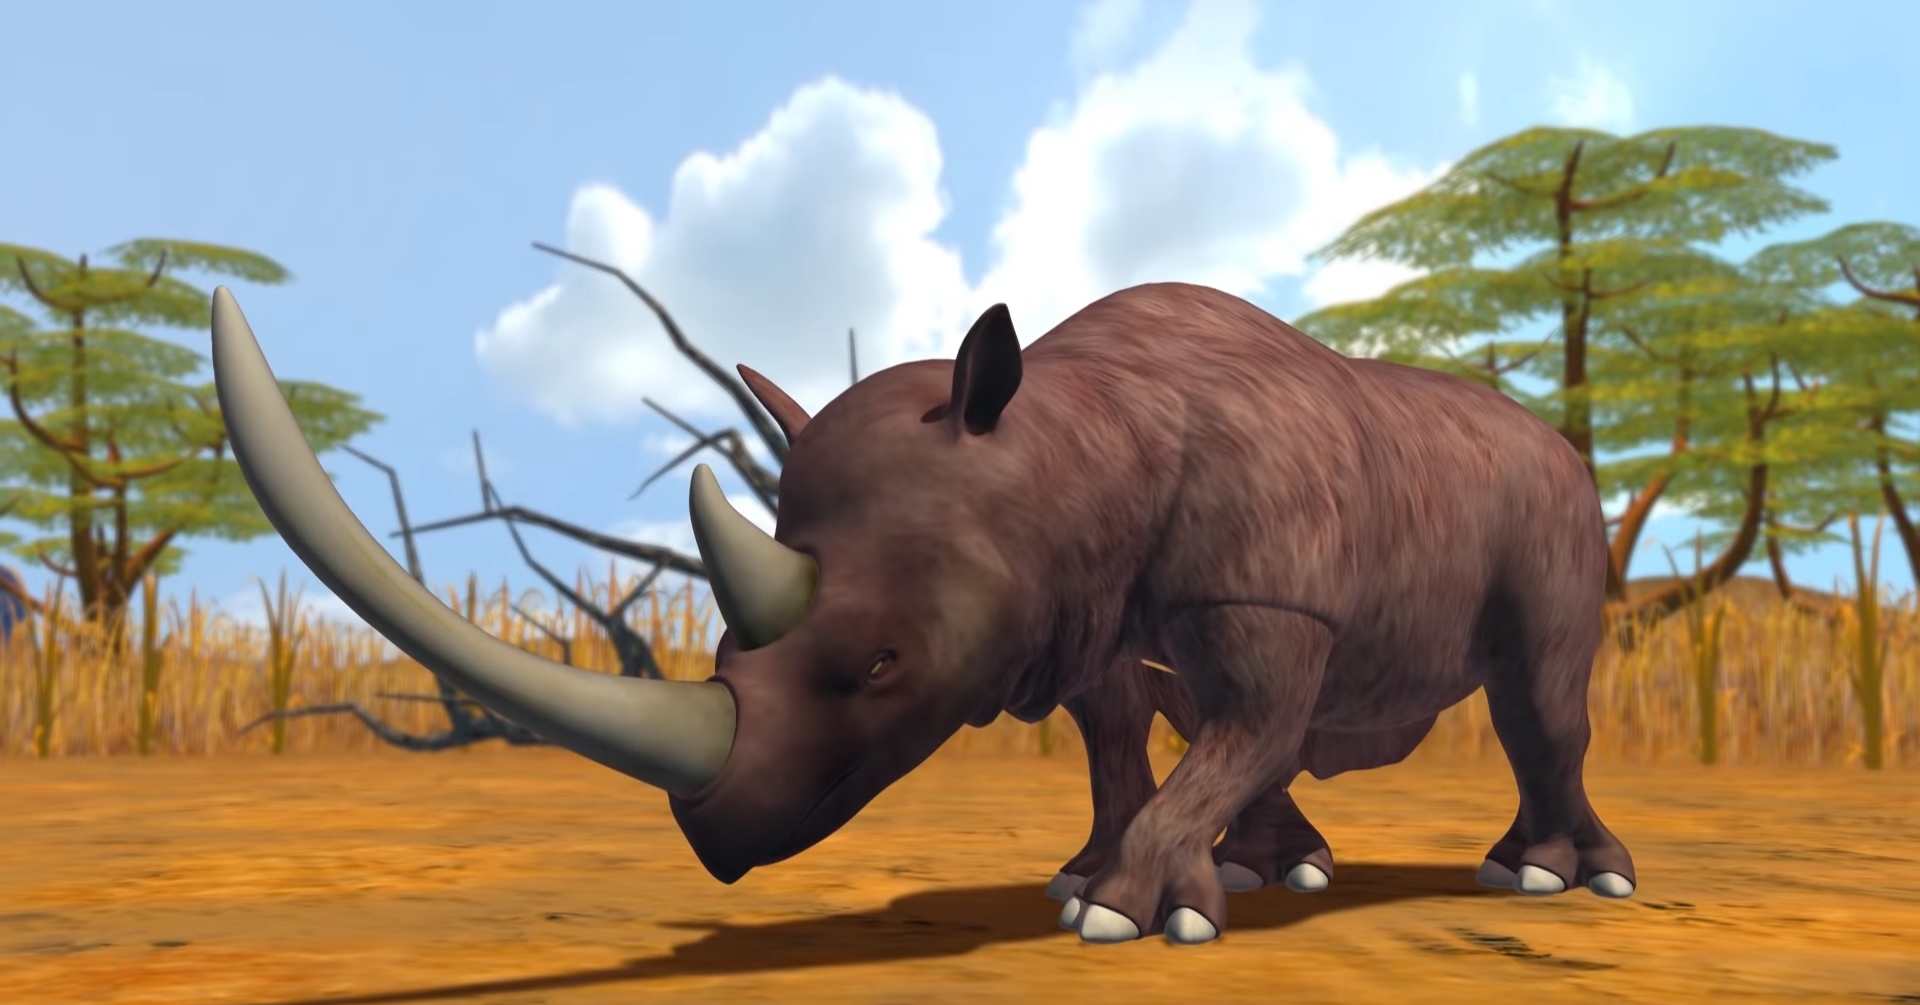 woolly rhinoceros